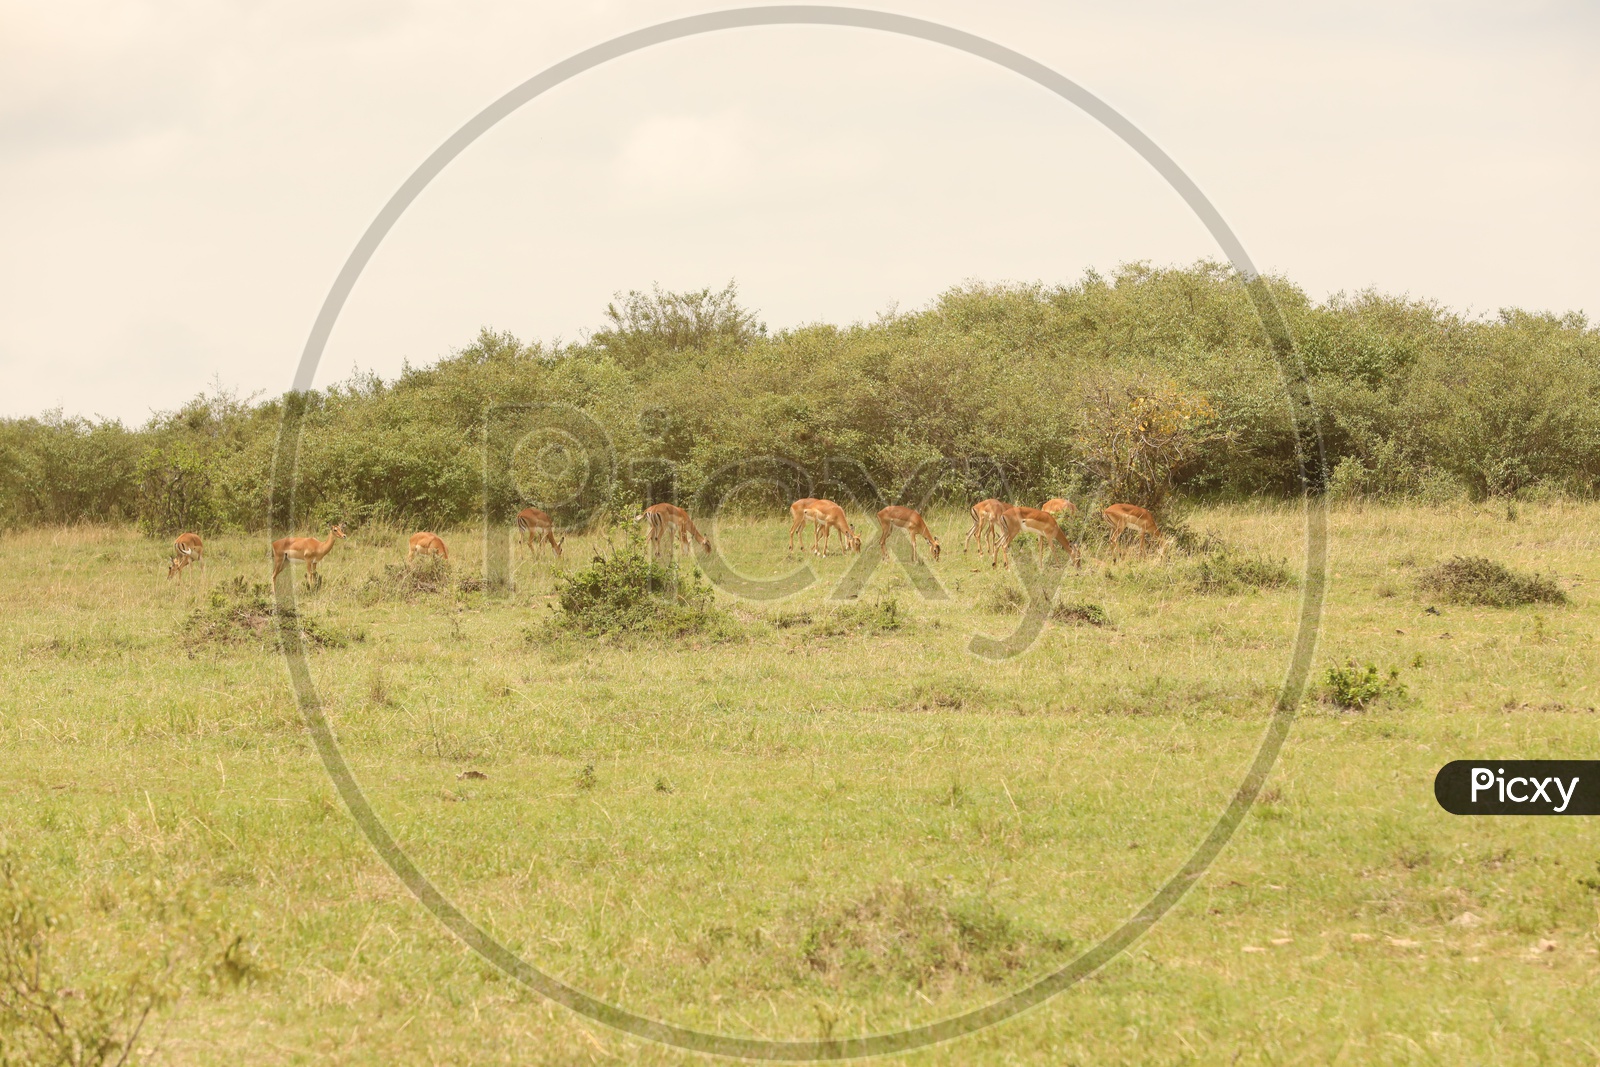 Deer  in  Masai Mara National Reserve